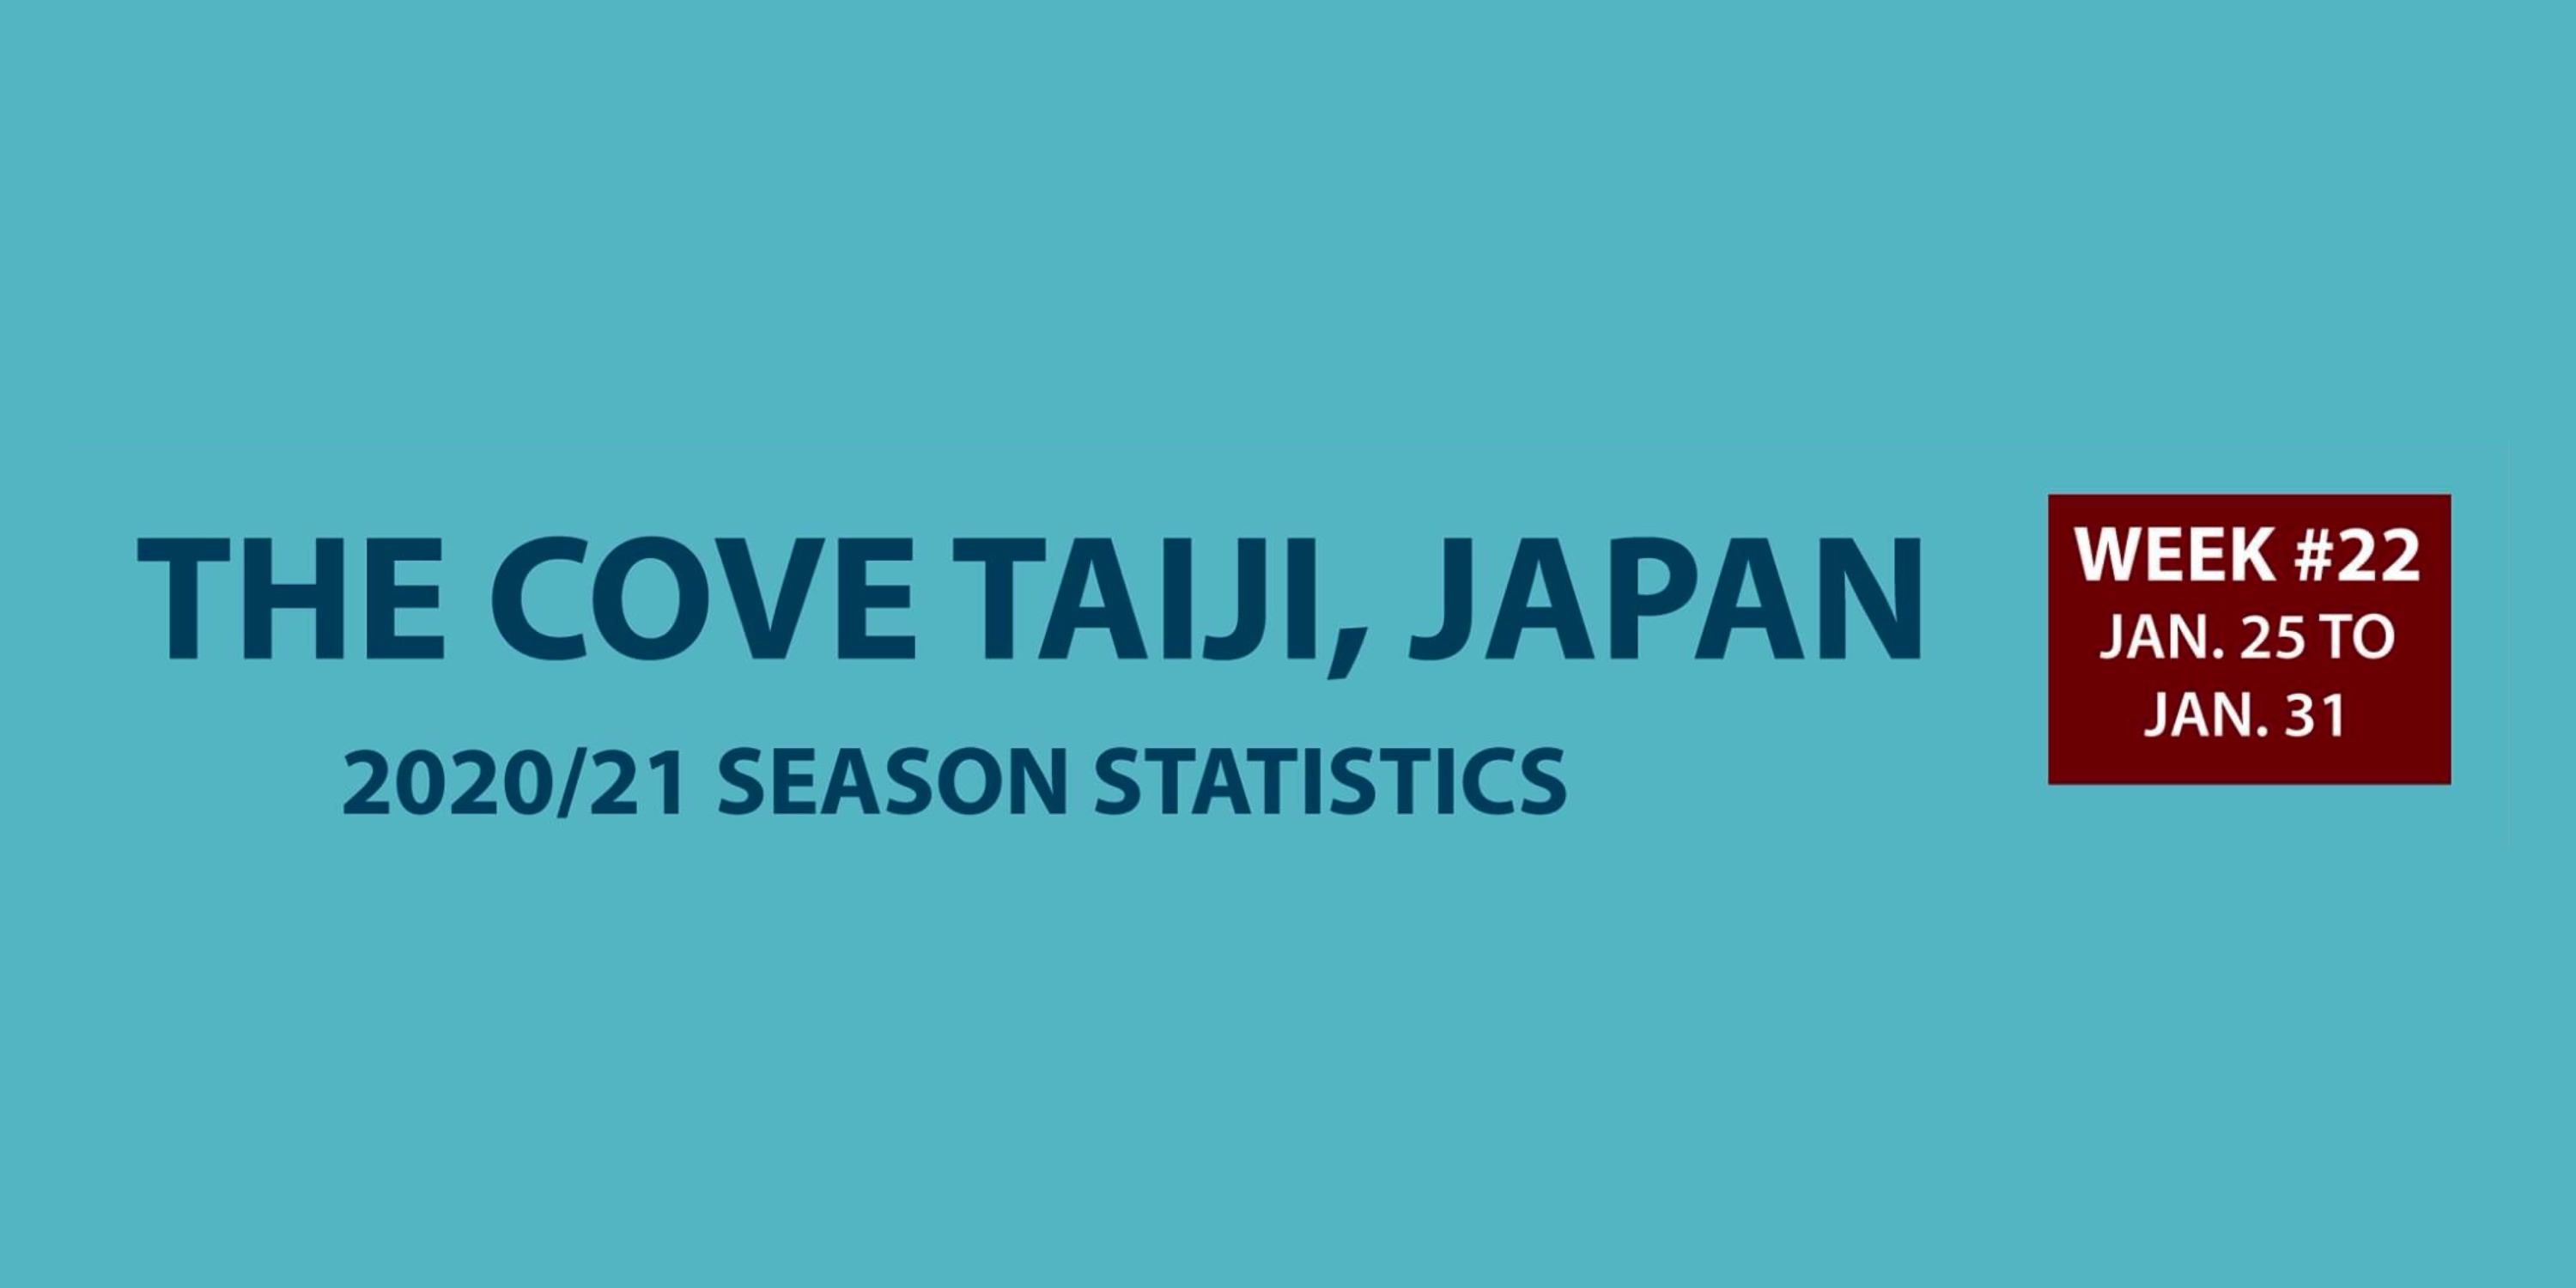 Chasse au dauphin à Taïji (Japon) – Bilan semaine du 25 au 31 janvier 2021 #22